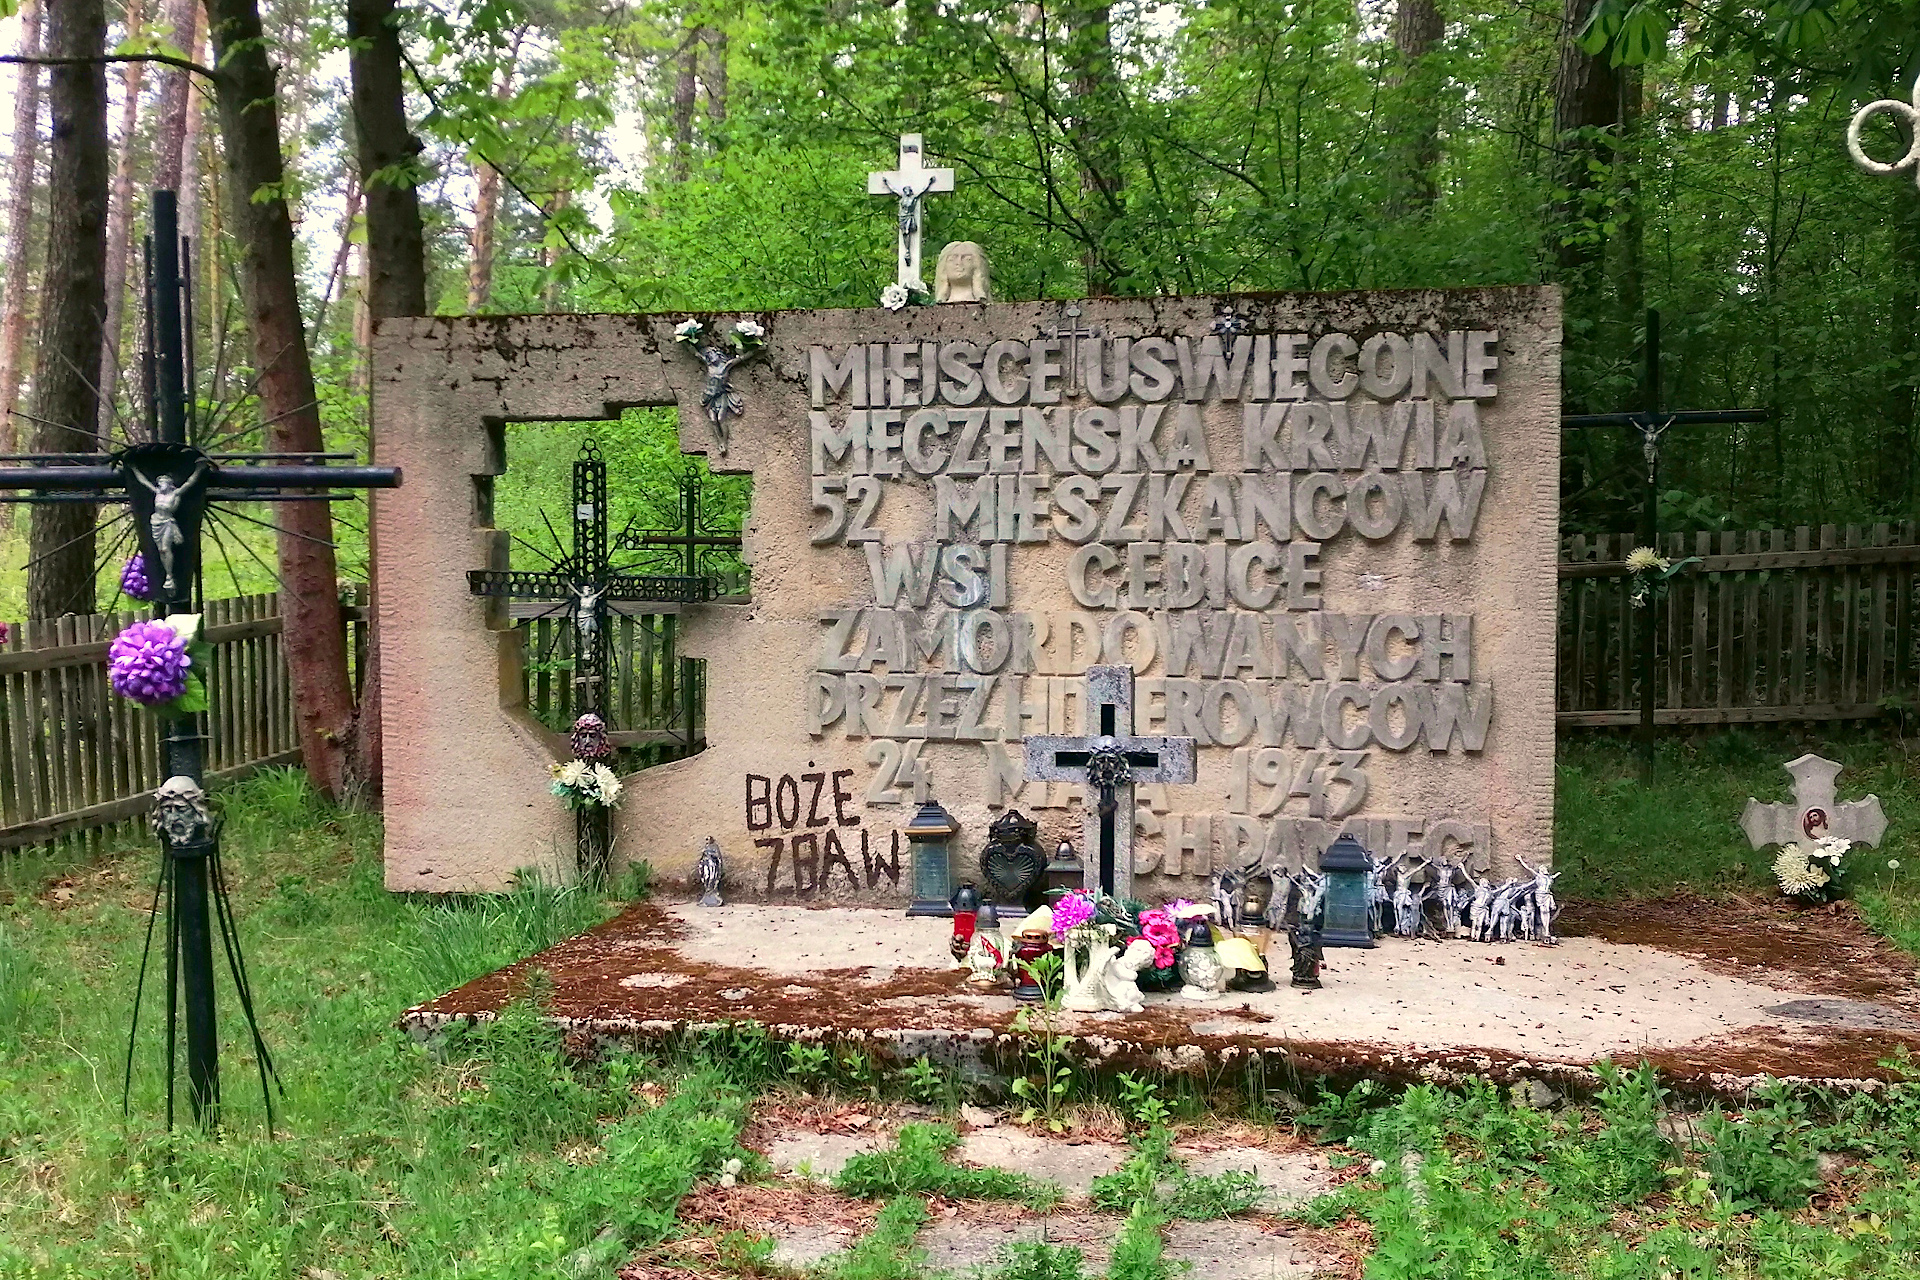 Miejsce śmierci 52 mieszkańców wsi Gębice zamordowanych 24 maja 1943 r.